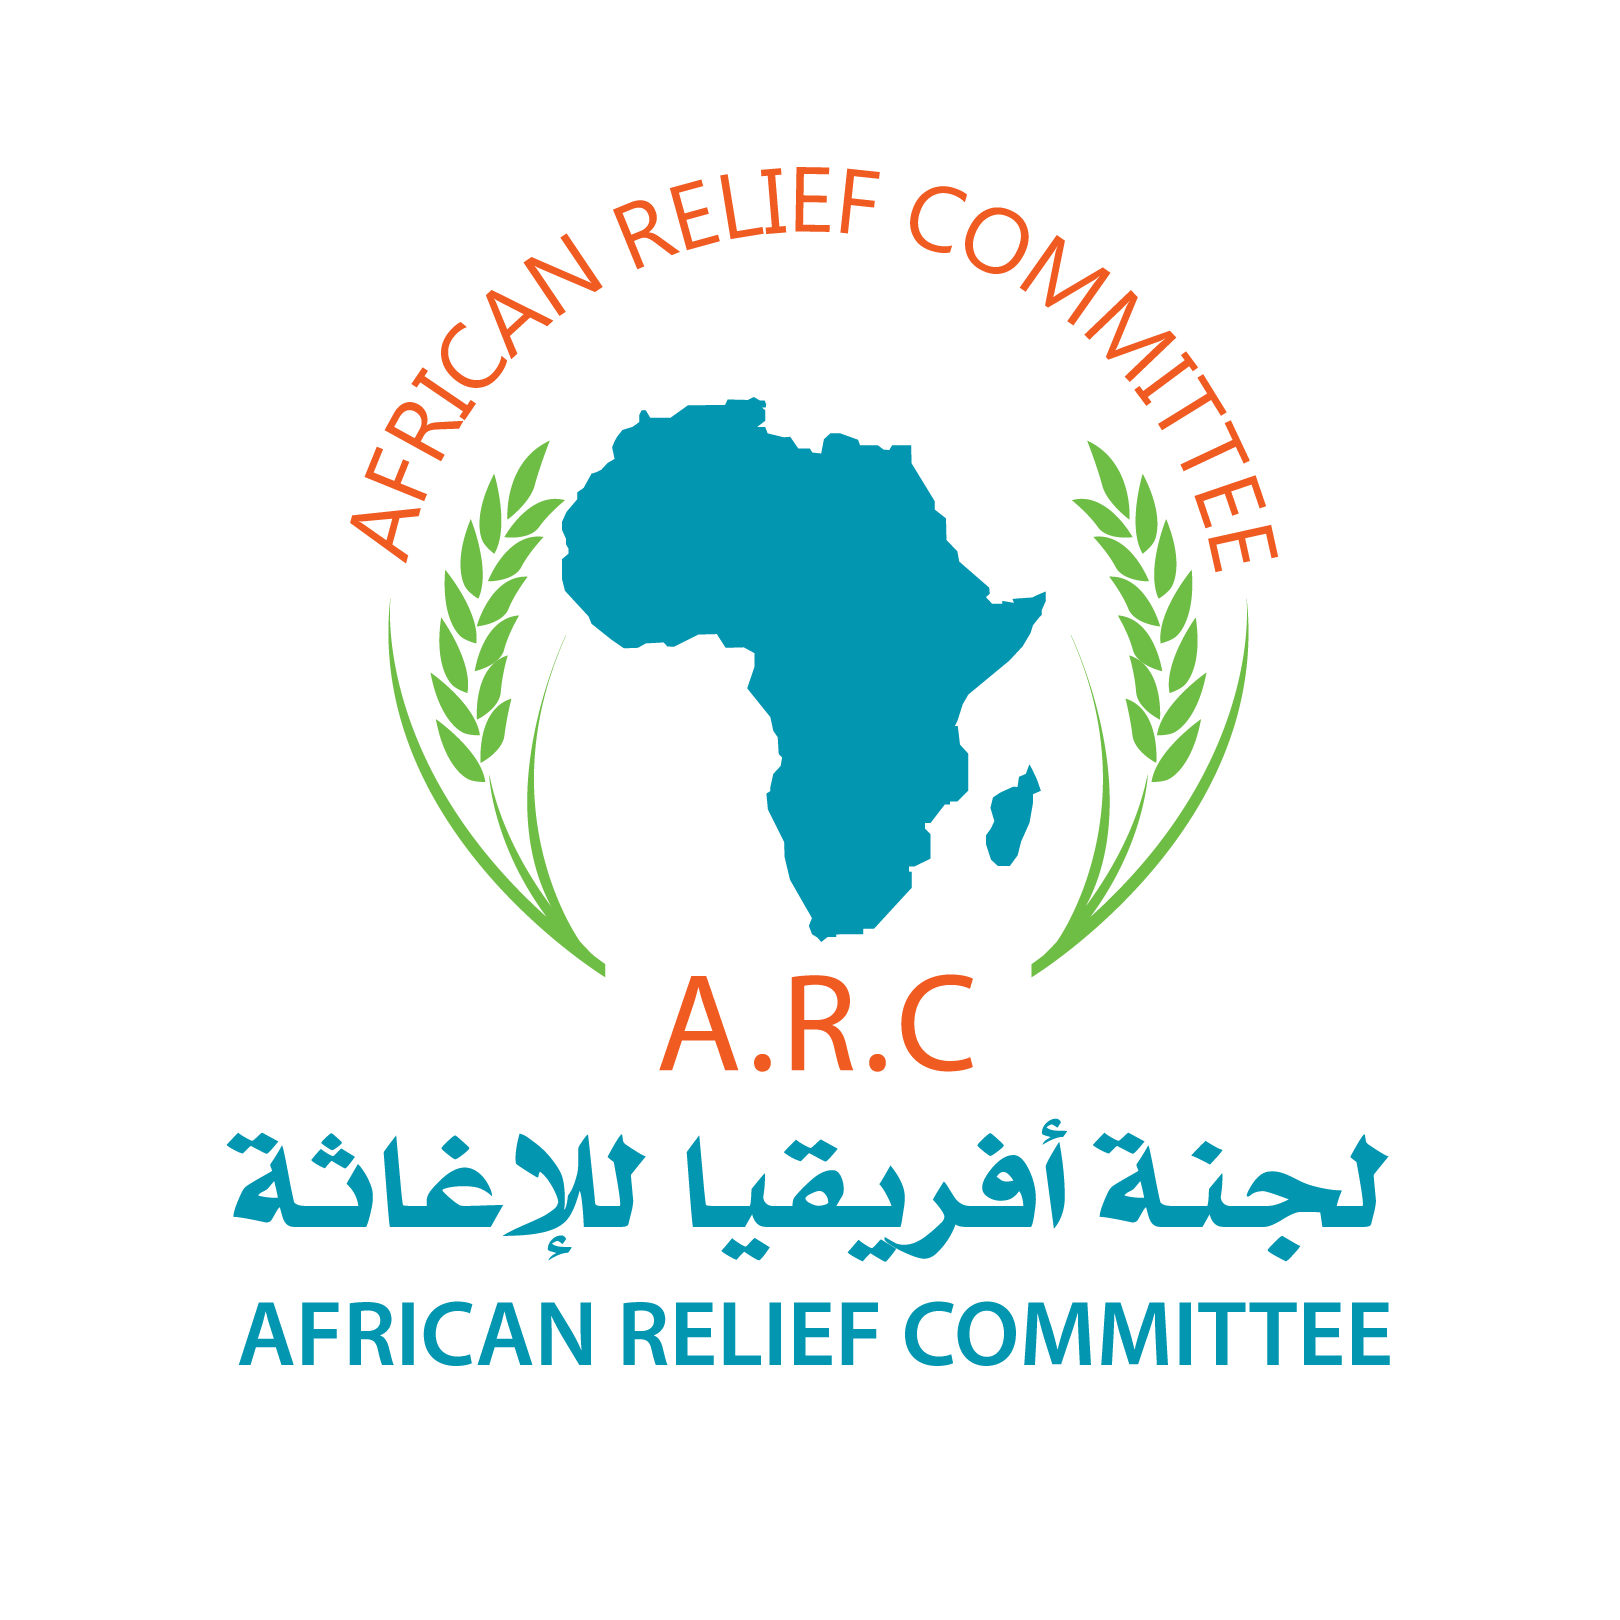 AFRICAN RELIEF COMMITTEE